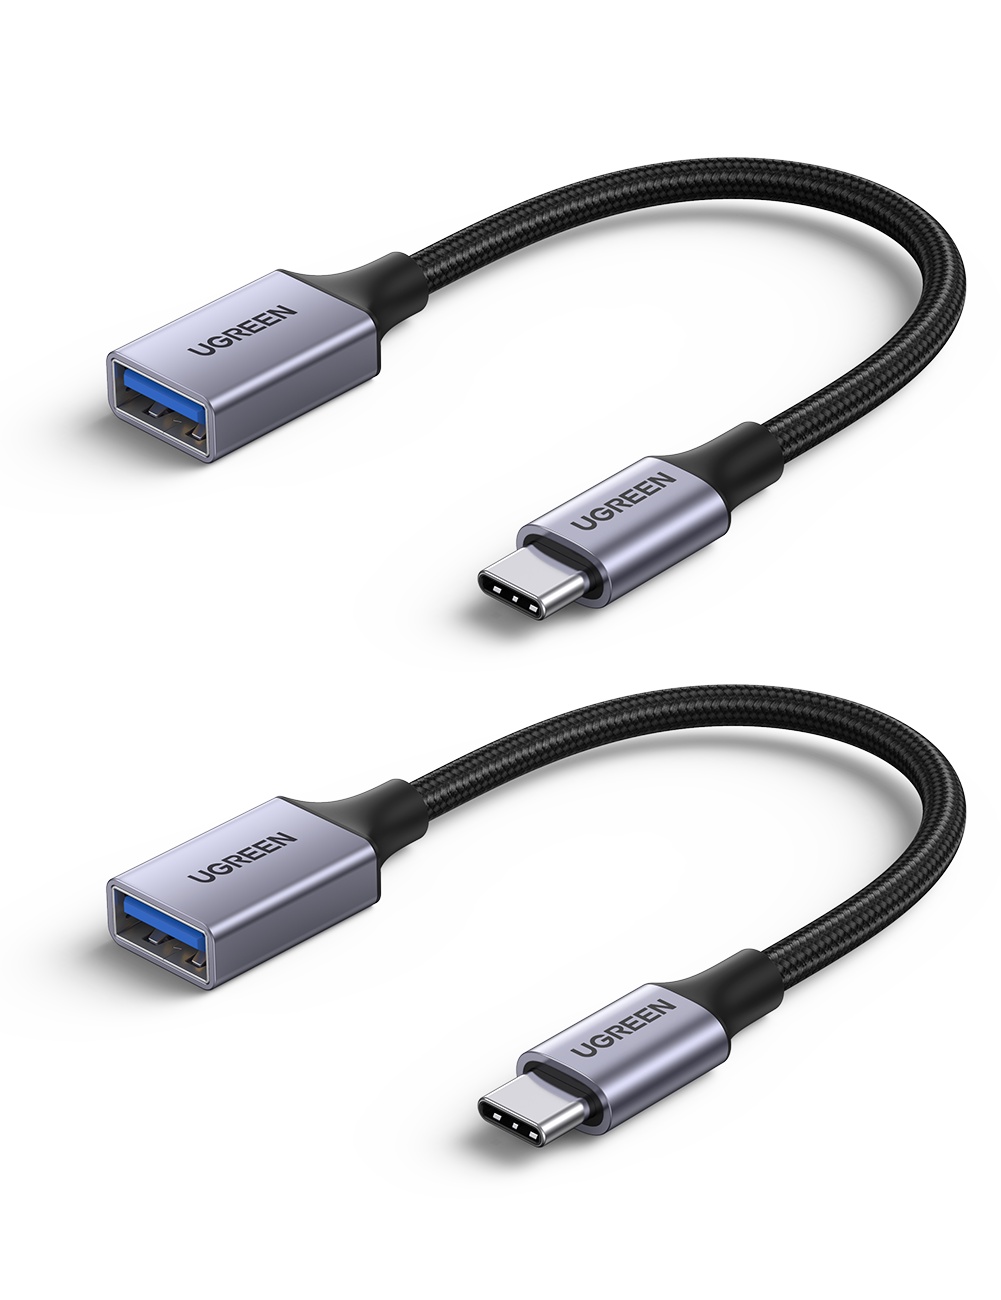 มุมมองเพิ่มเติมของสินค้า UGREEN สายแปลง OTG จาก USB C เป็น USB 3.0 สำหรับ Macbook Pro Air iPad Pro 2020, Dell XPS